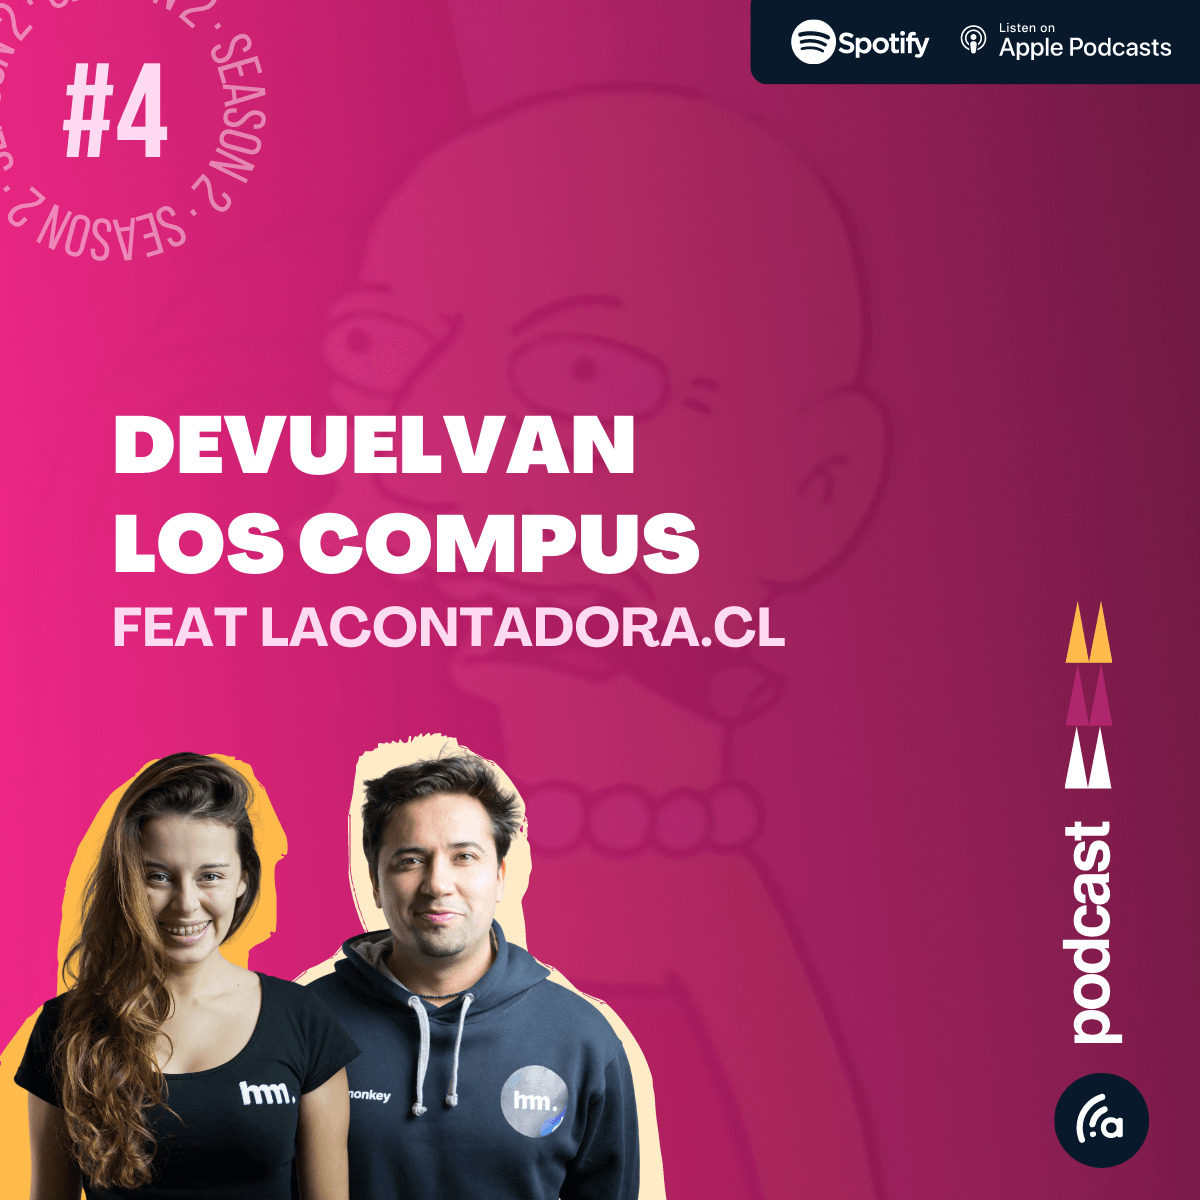 Emprende Podcast - Episodio 4 - Devuelvan los compus - Entrevista a La Contadora.cl